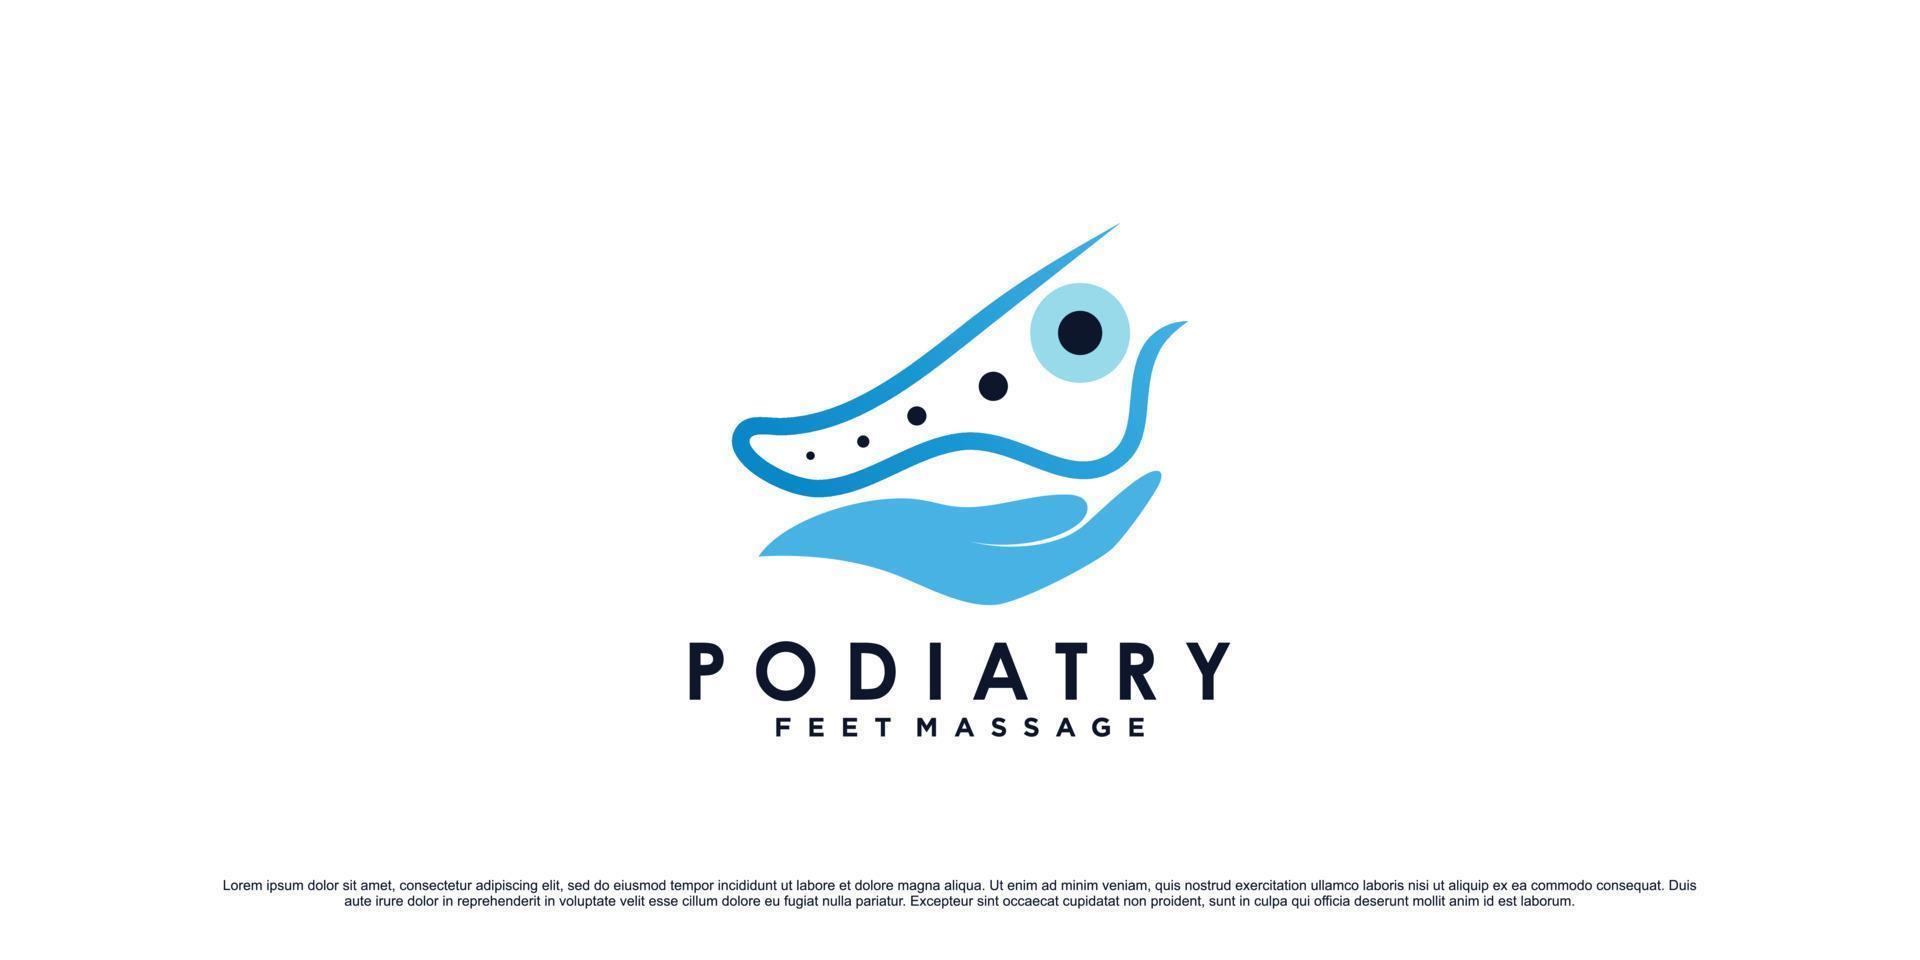 Podologie-Fußmassage-Logo-Design mit Knöchelkonzept und kreativem Element-Premium-Vektor vektor